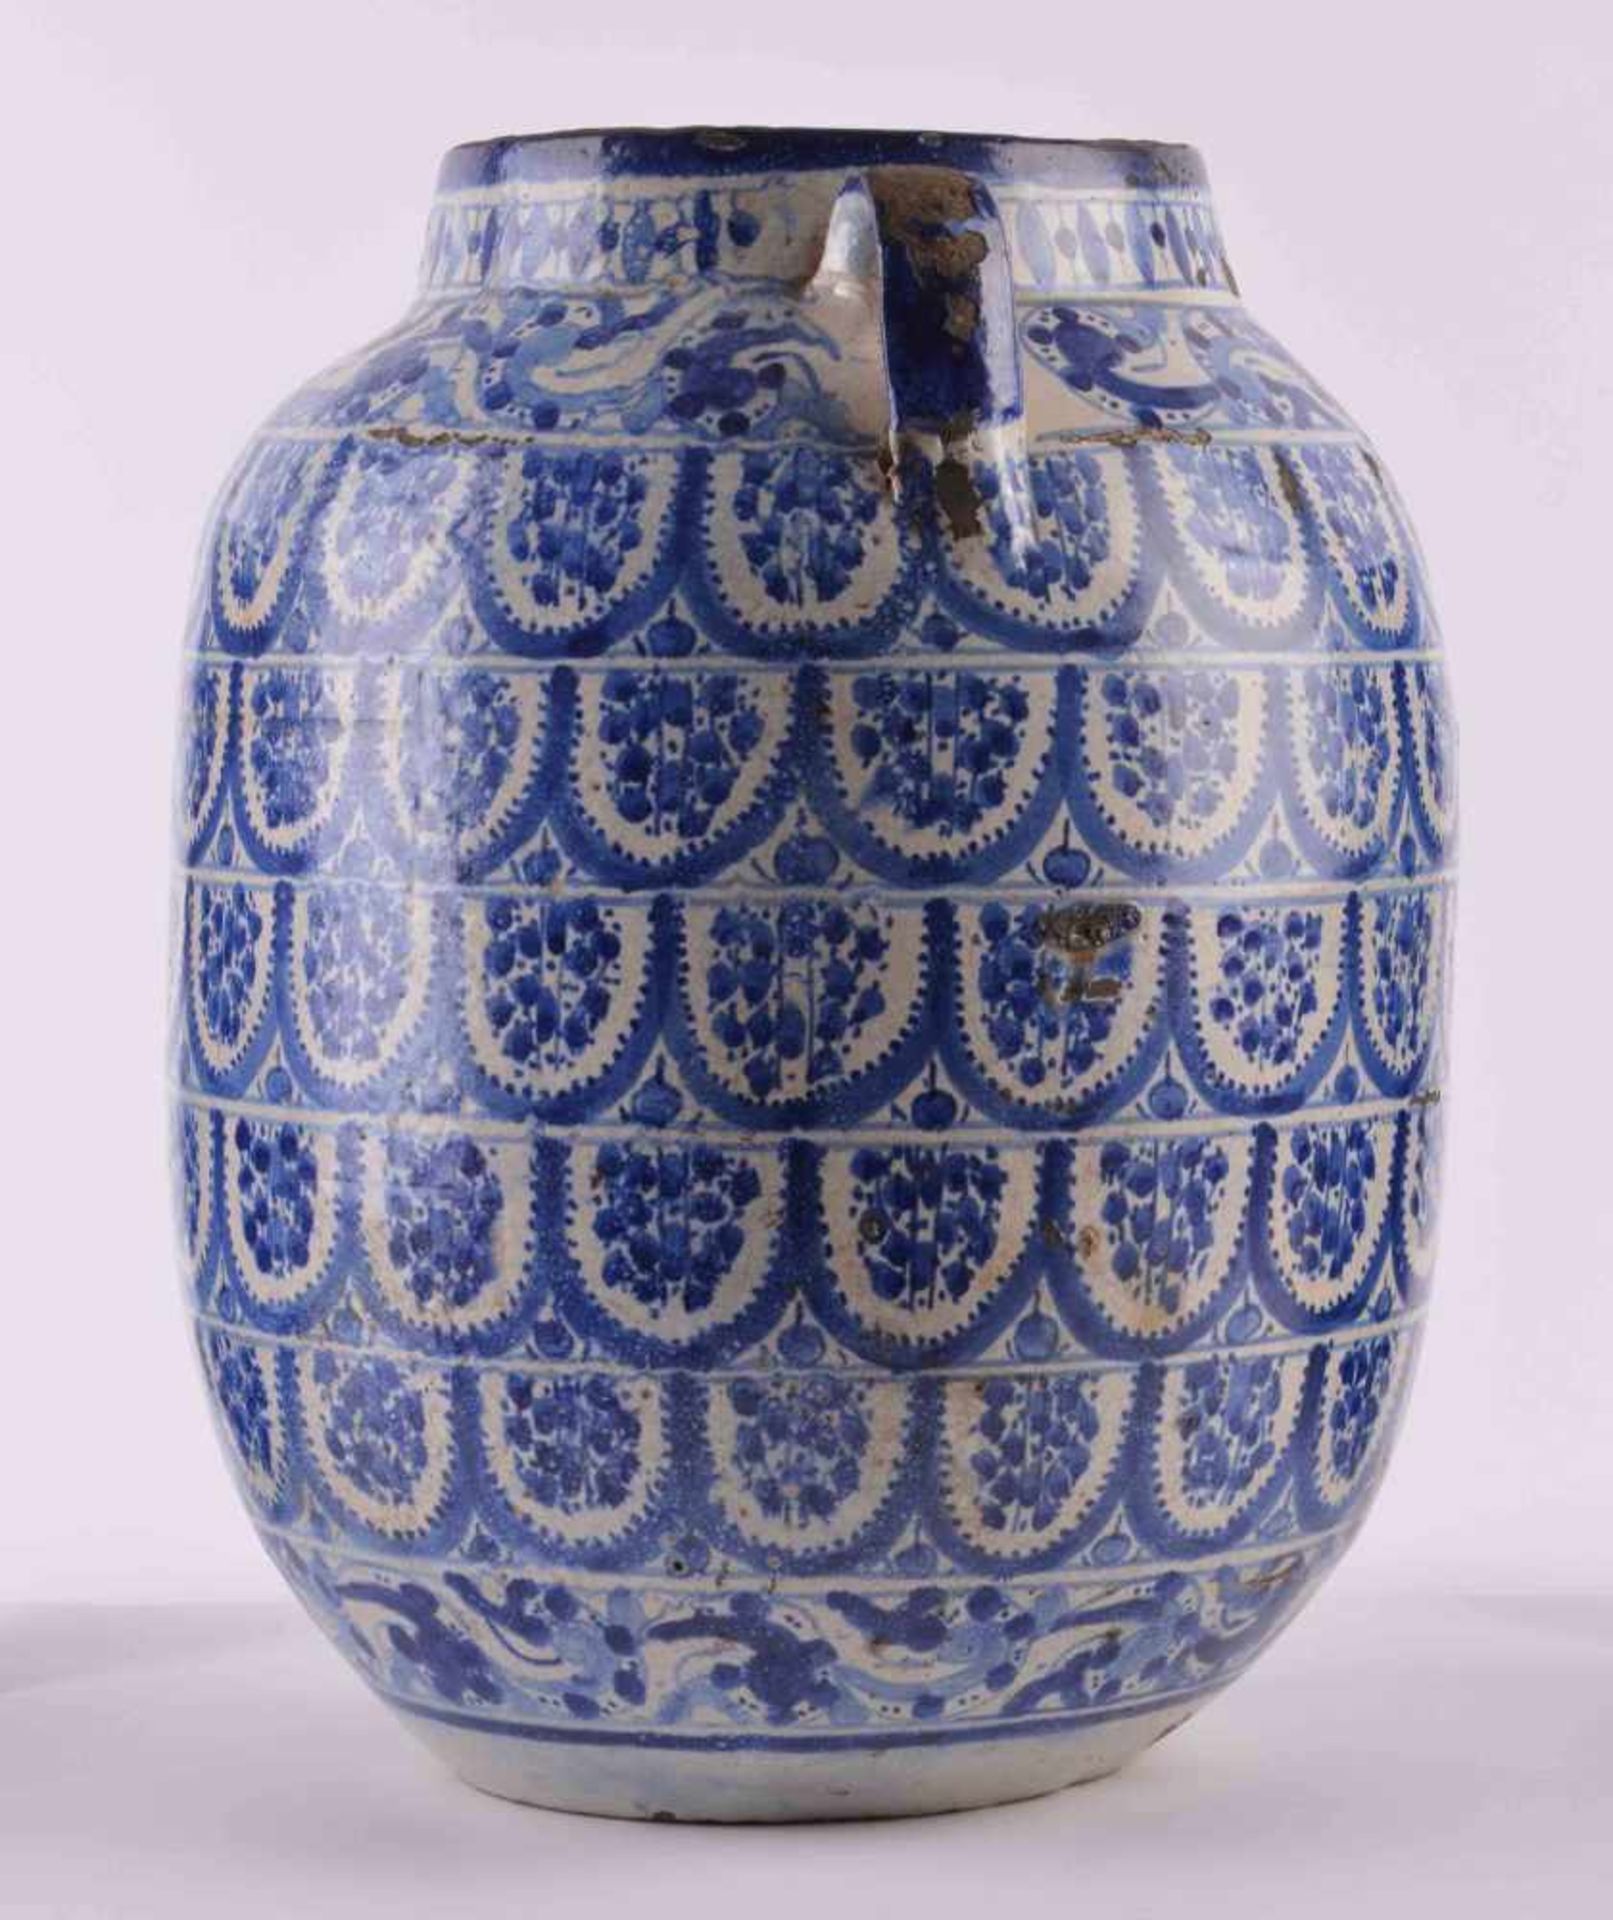 Vase wohl Persien 19. Jhd oder älterumlaufend mit blau-weißem Dekor verziert, glasiert, einige - Bild 2 aus 6